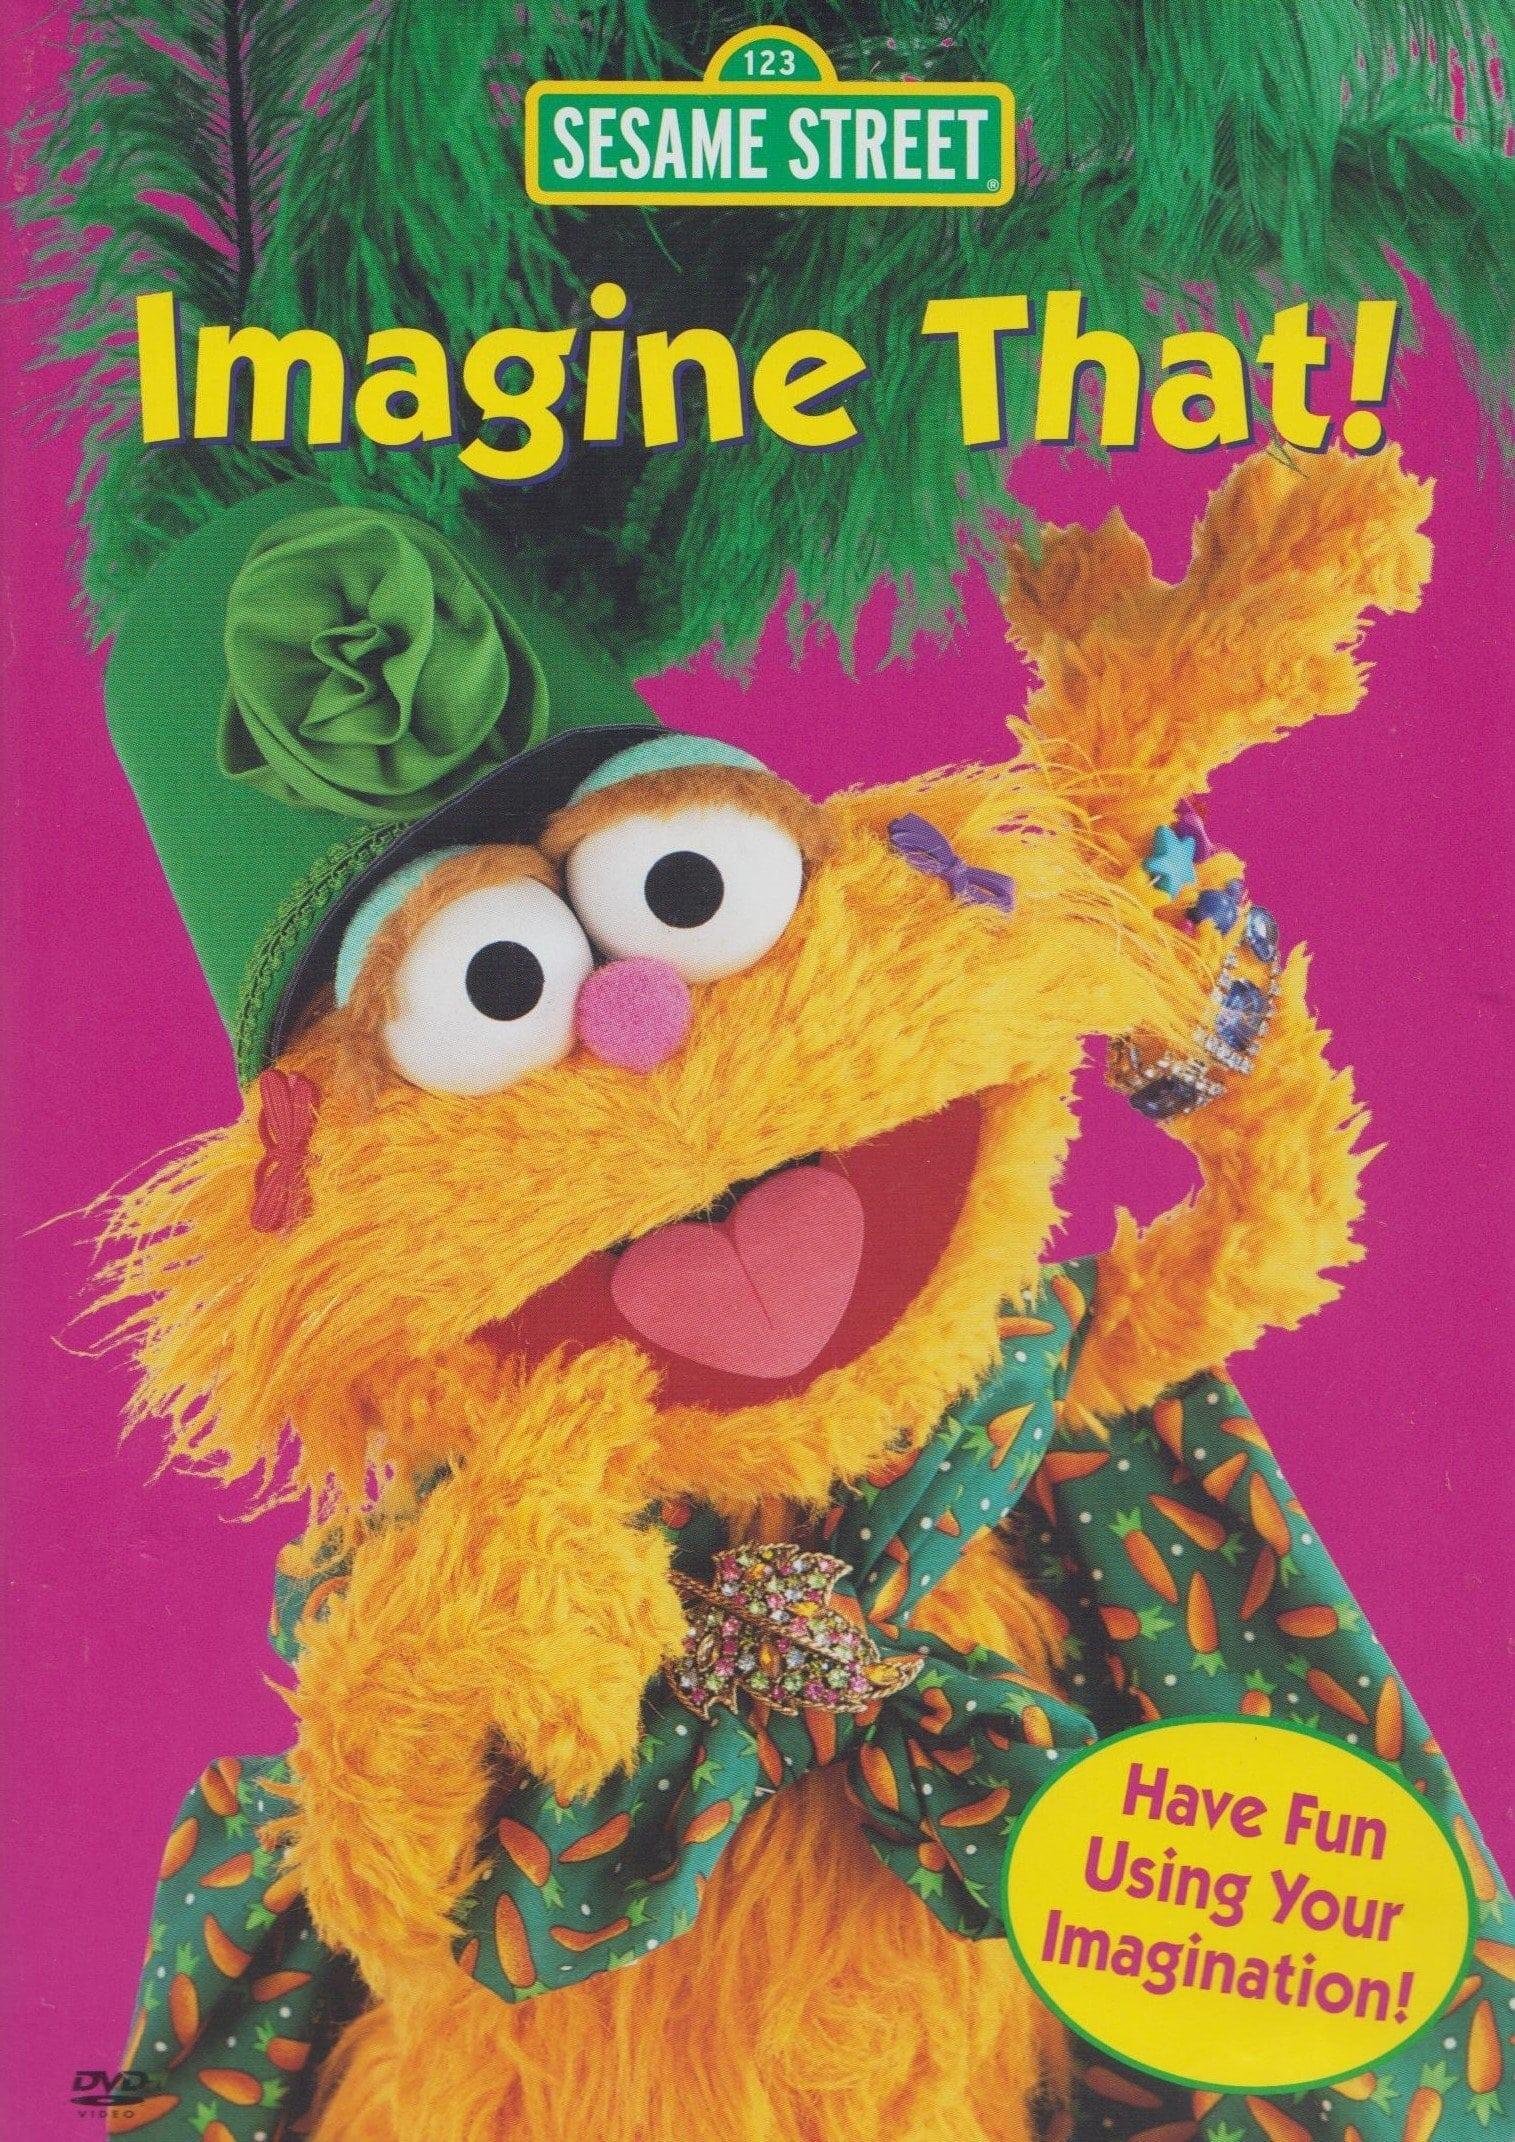 Sesame Street: Imagine That! poster